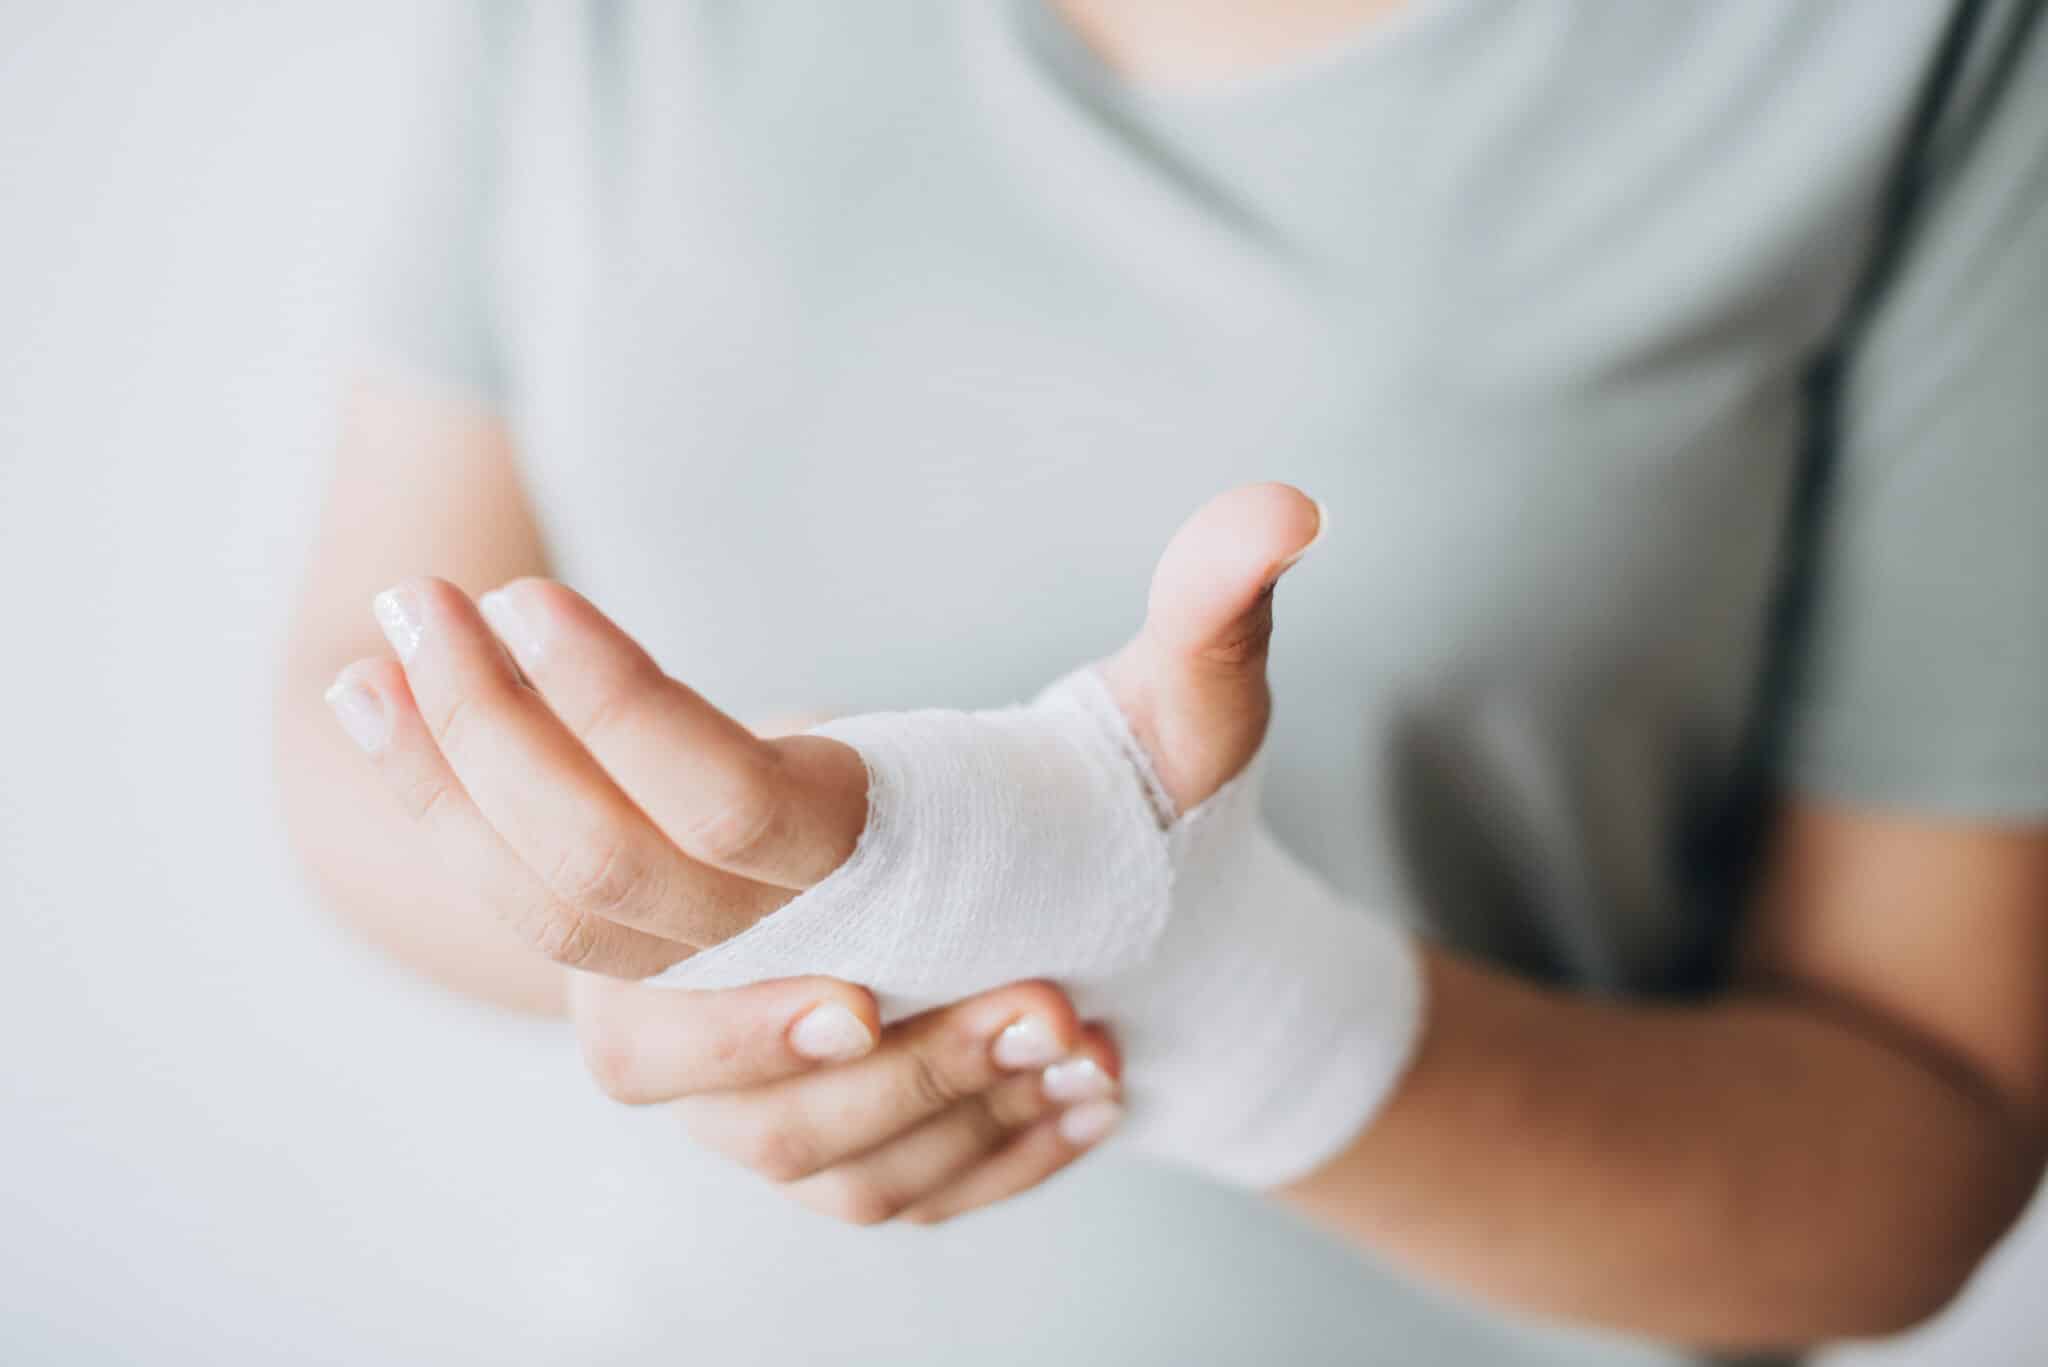 wound management, minor procedure, hand injury